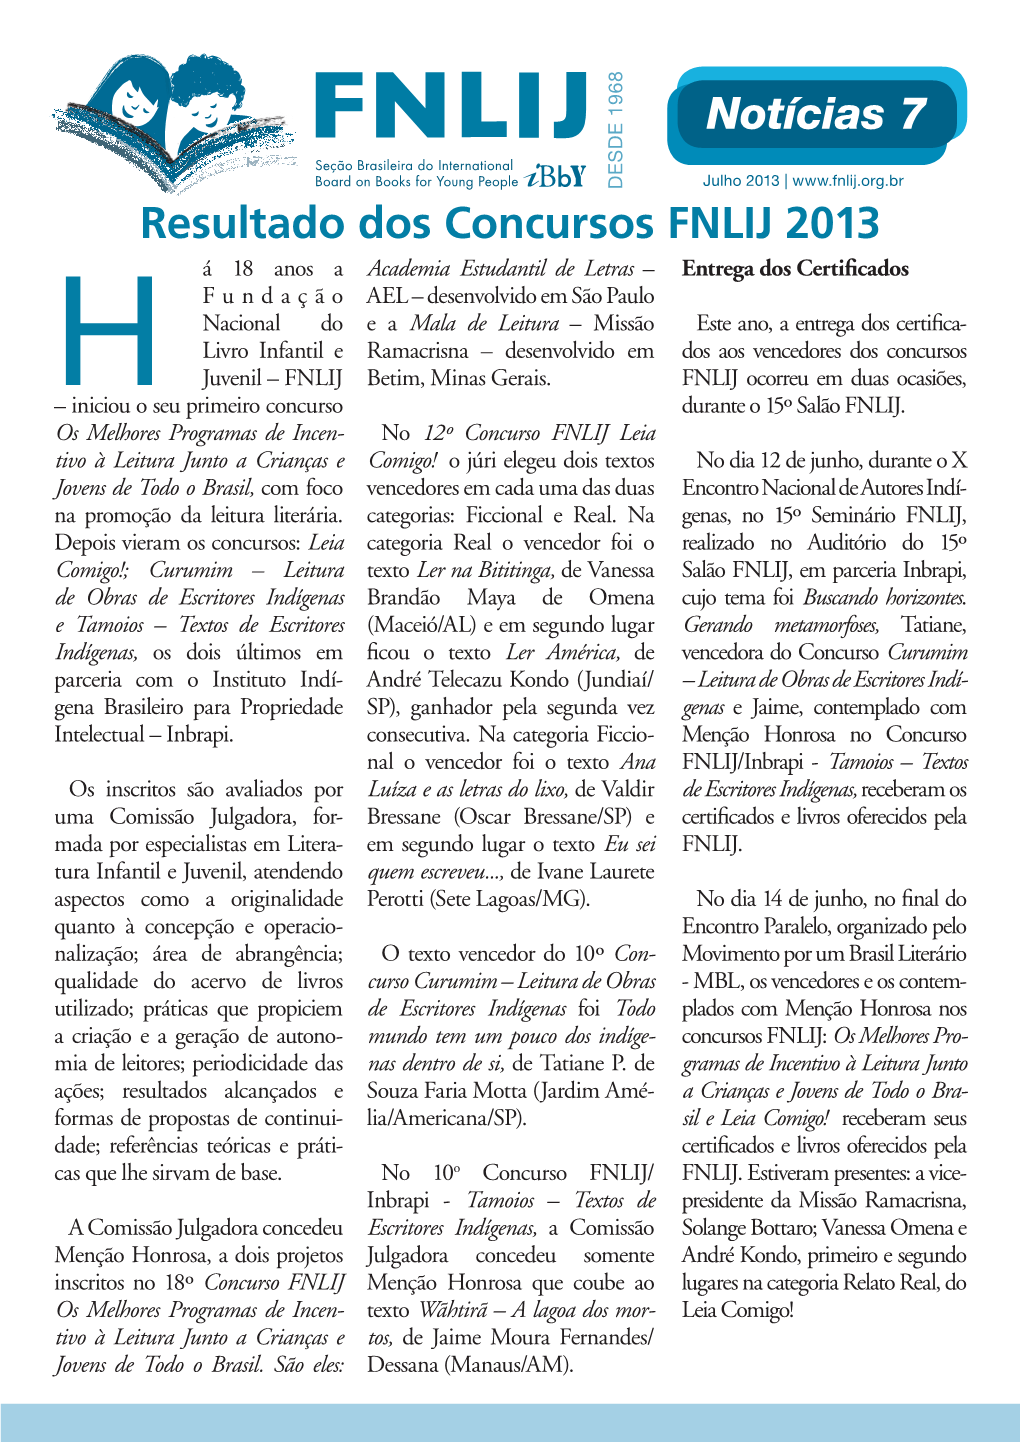 Jornal Notícias Julho 2013